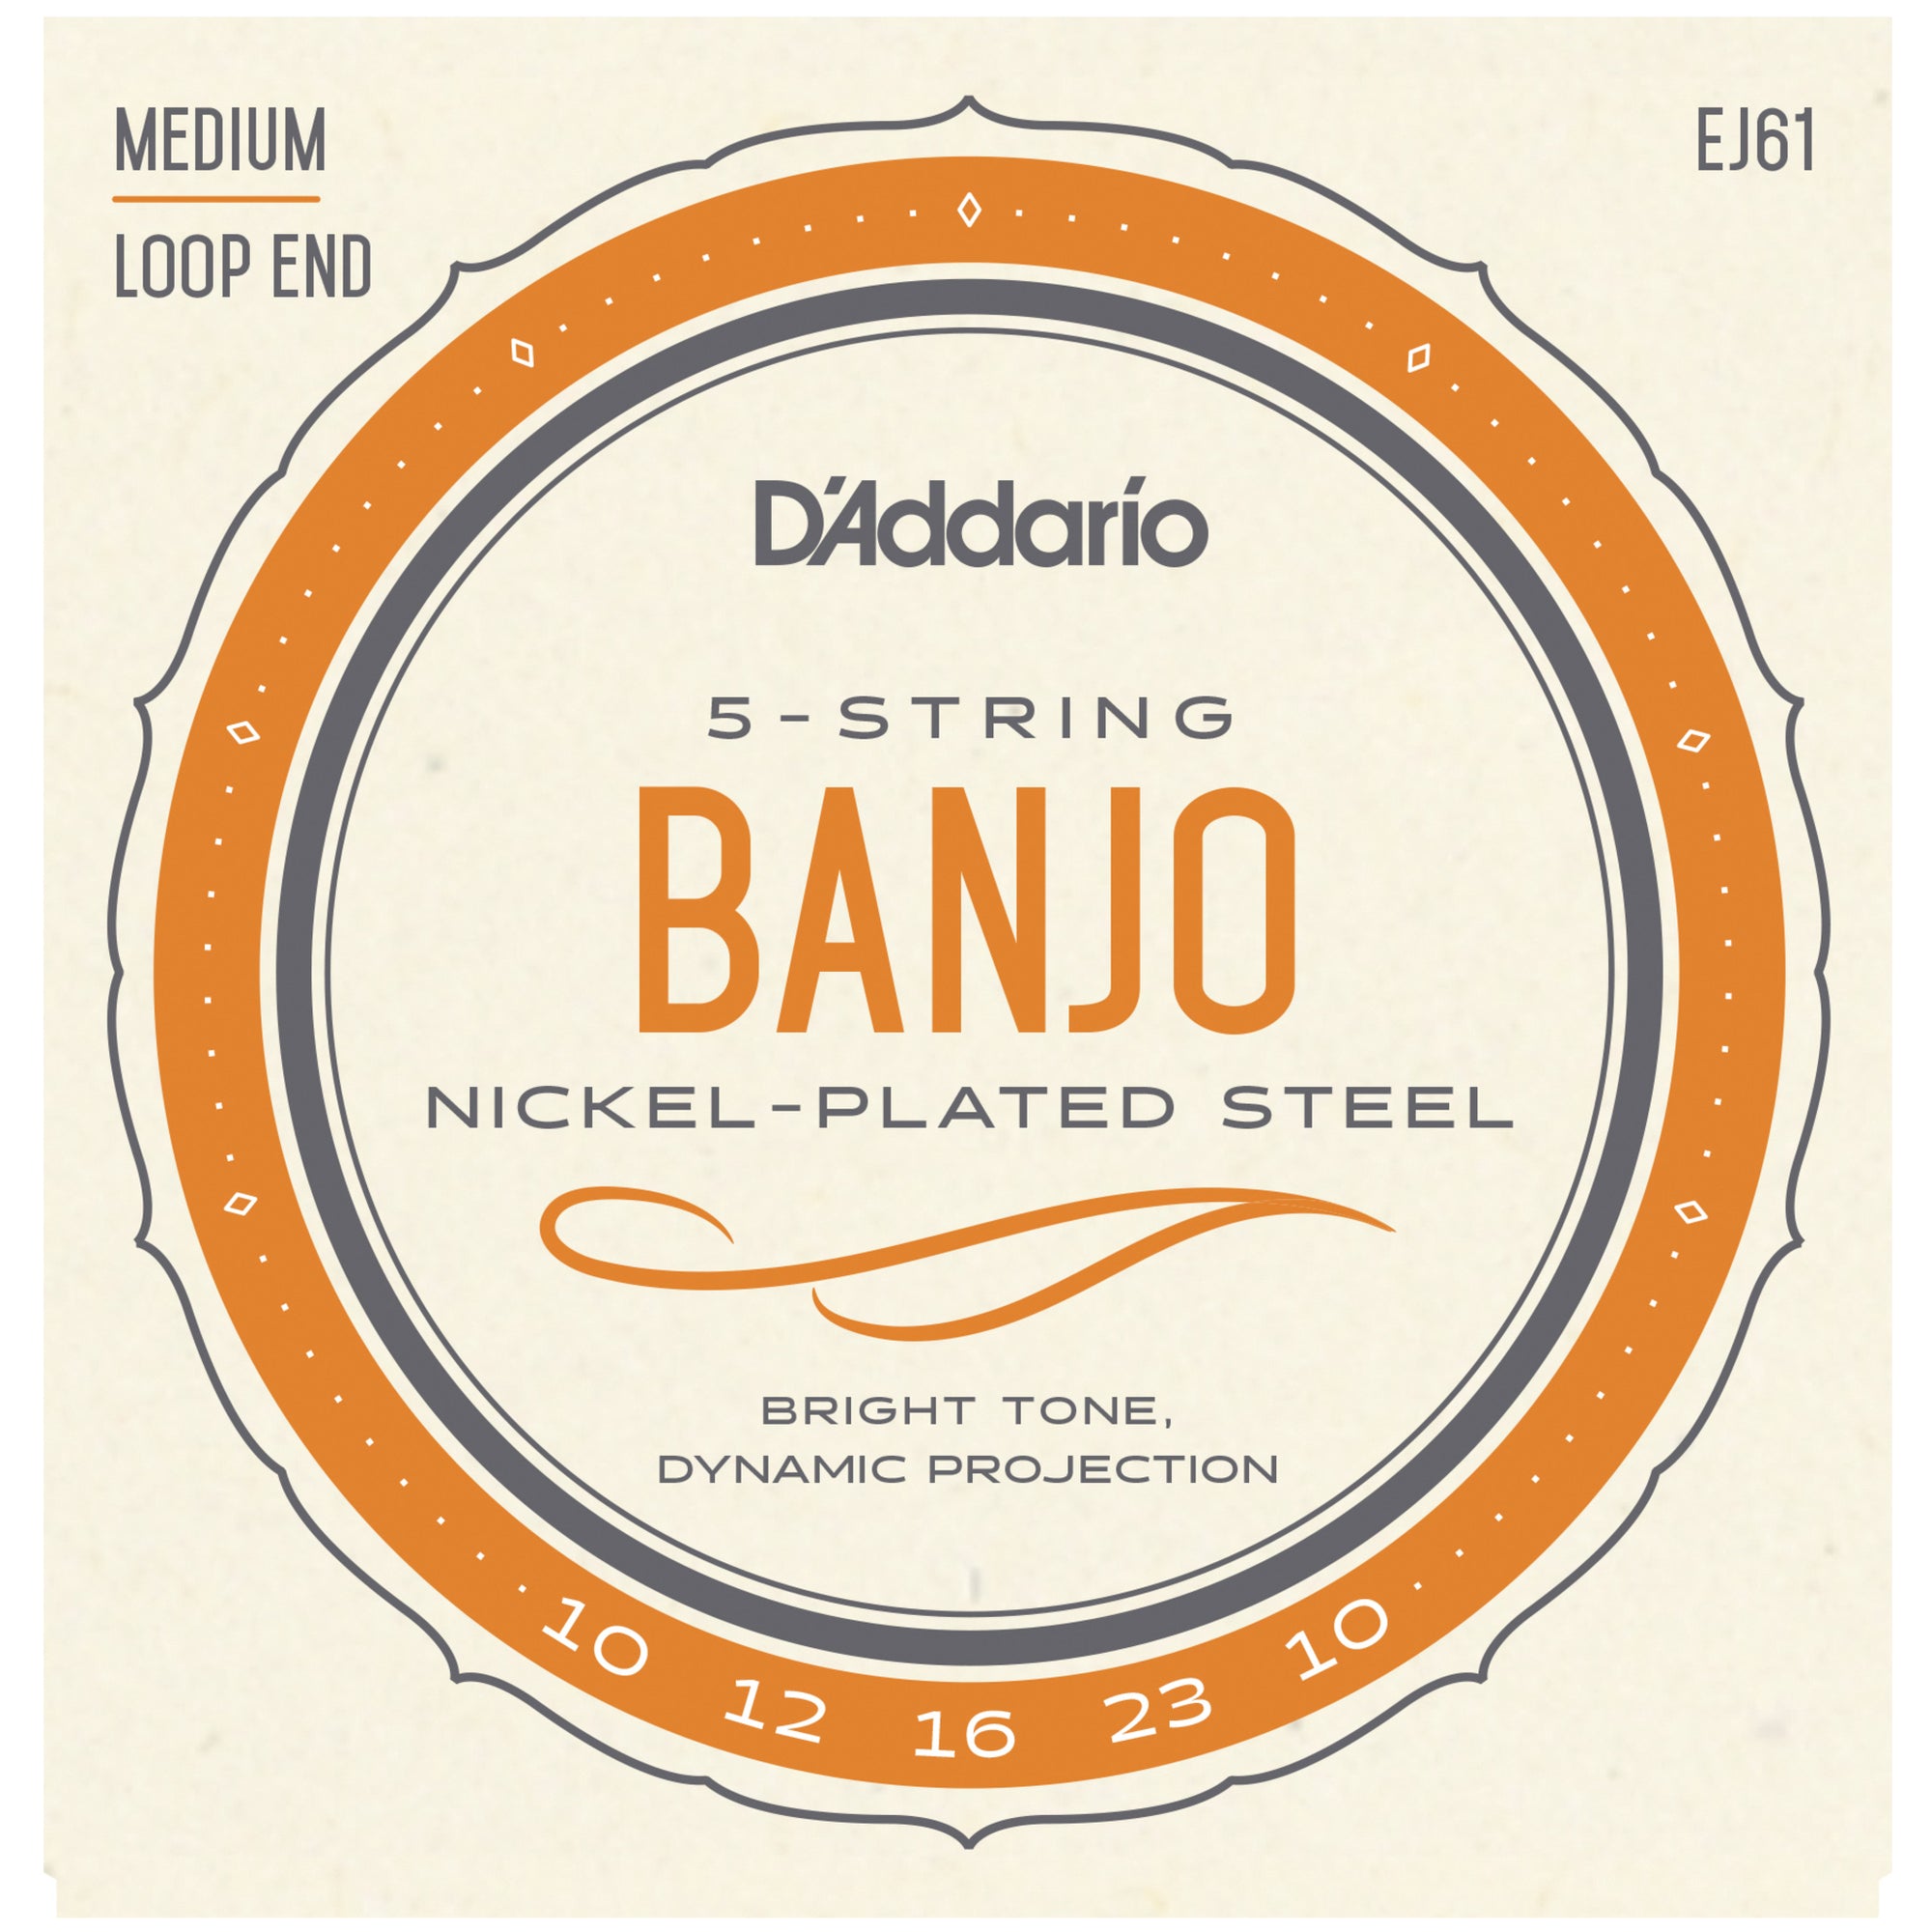 D'Addario EJ61 10-23 Nickel Medium 5-String Banjo Strings